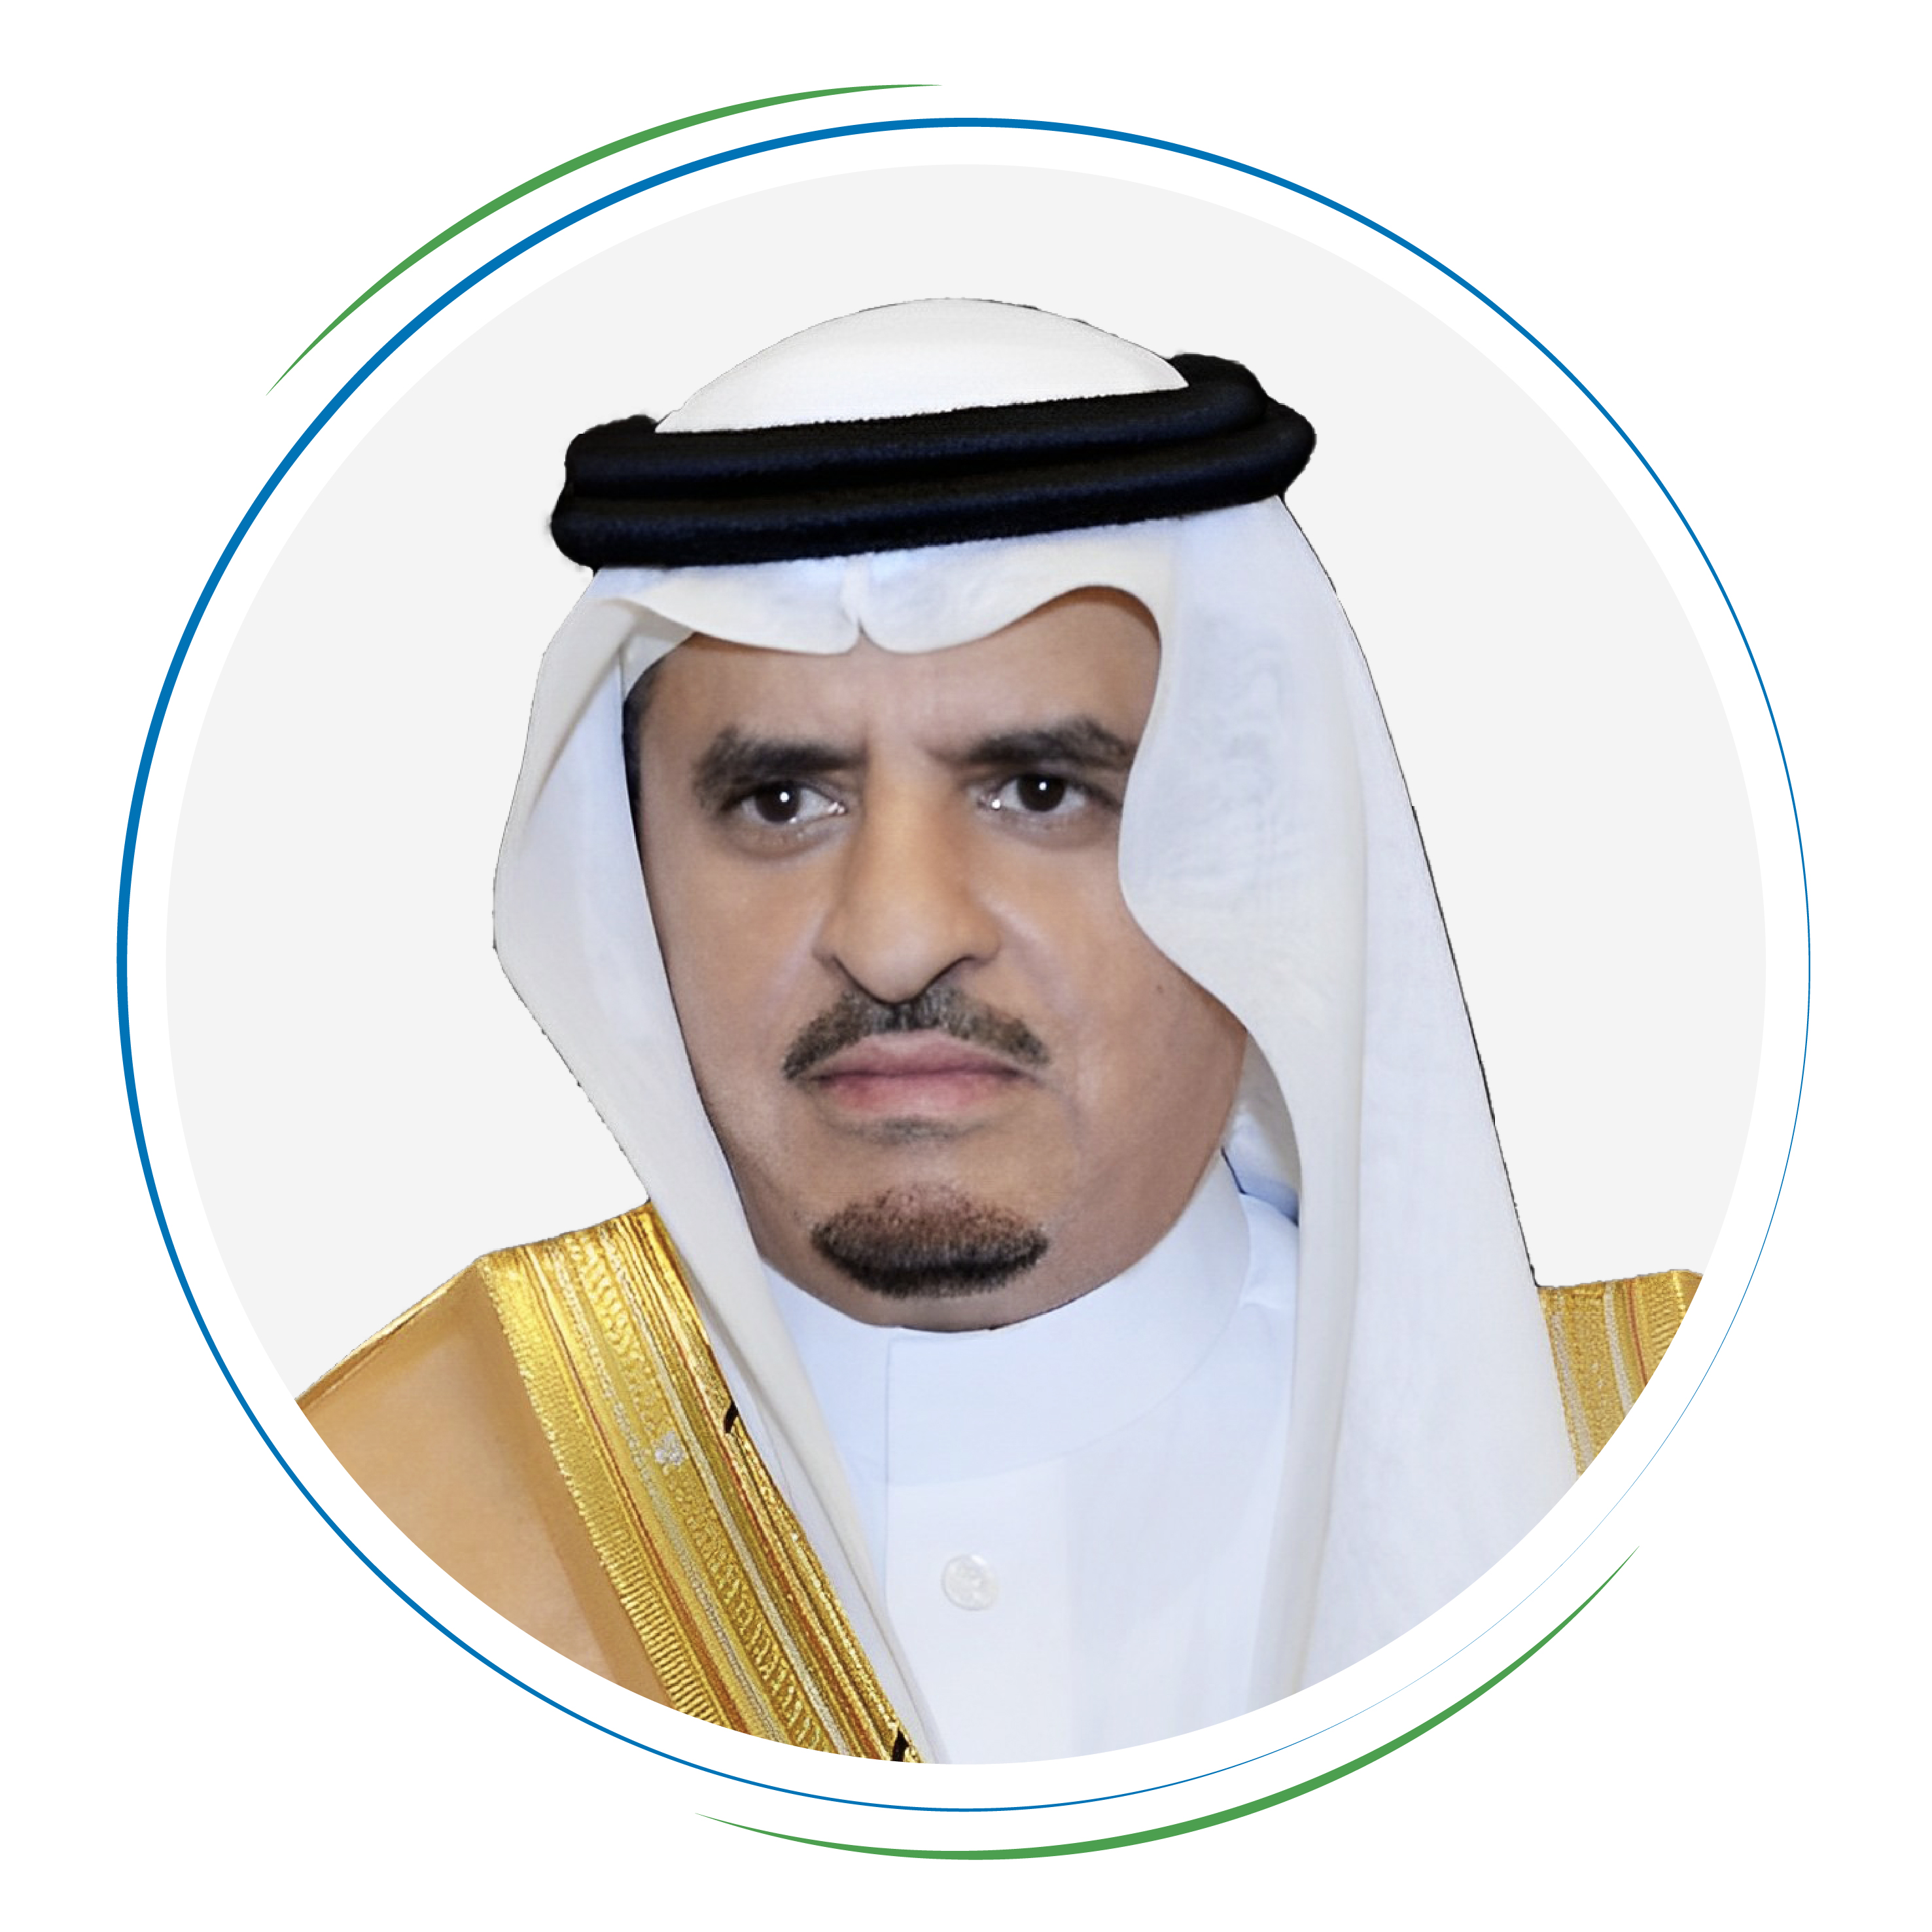 His Excellency Dr. Nasser bin Abdulaziz Al-Dawood